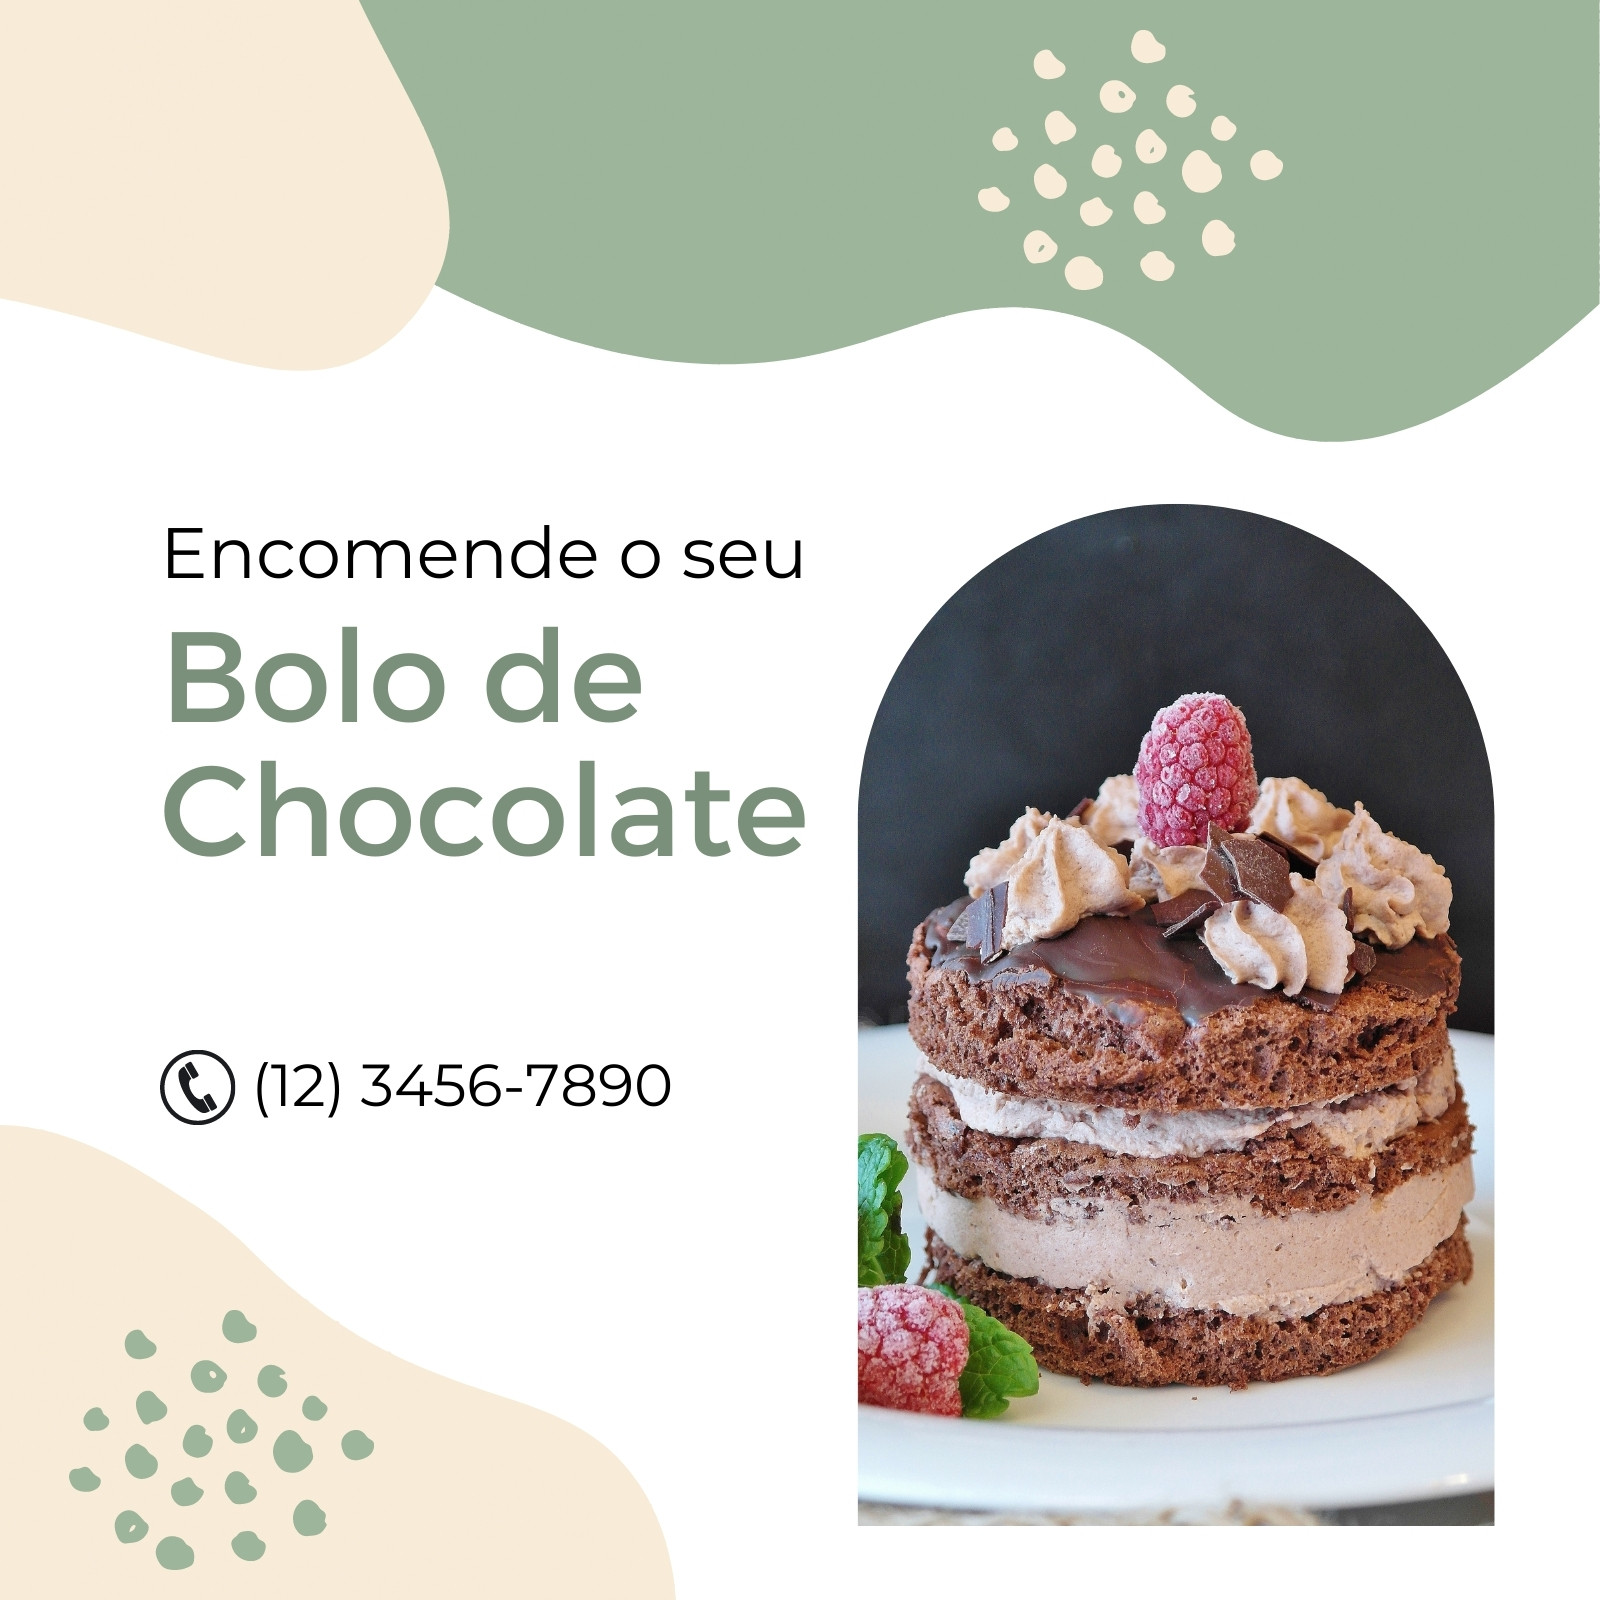 Casa do Chocolate Doceria Artesanal, Bolos Decorados